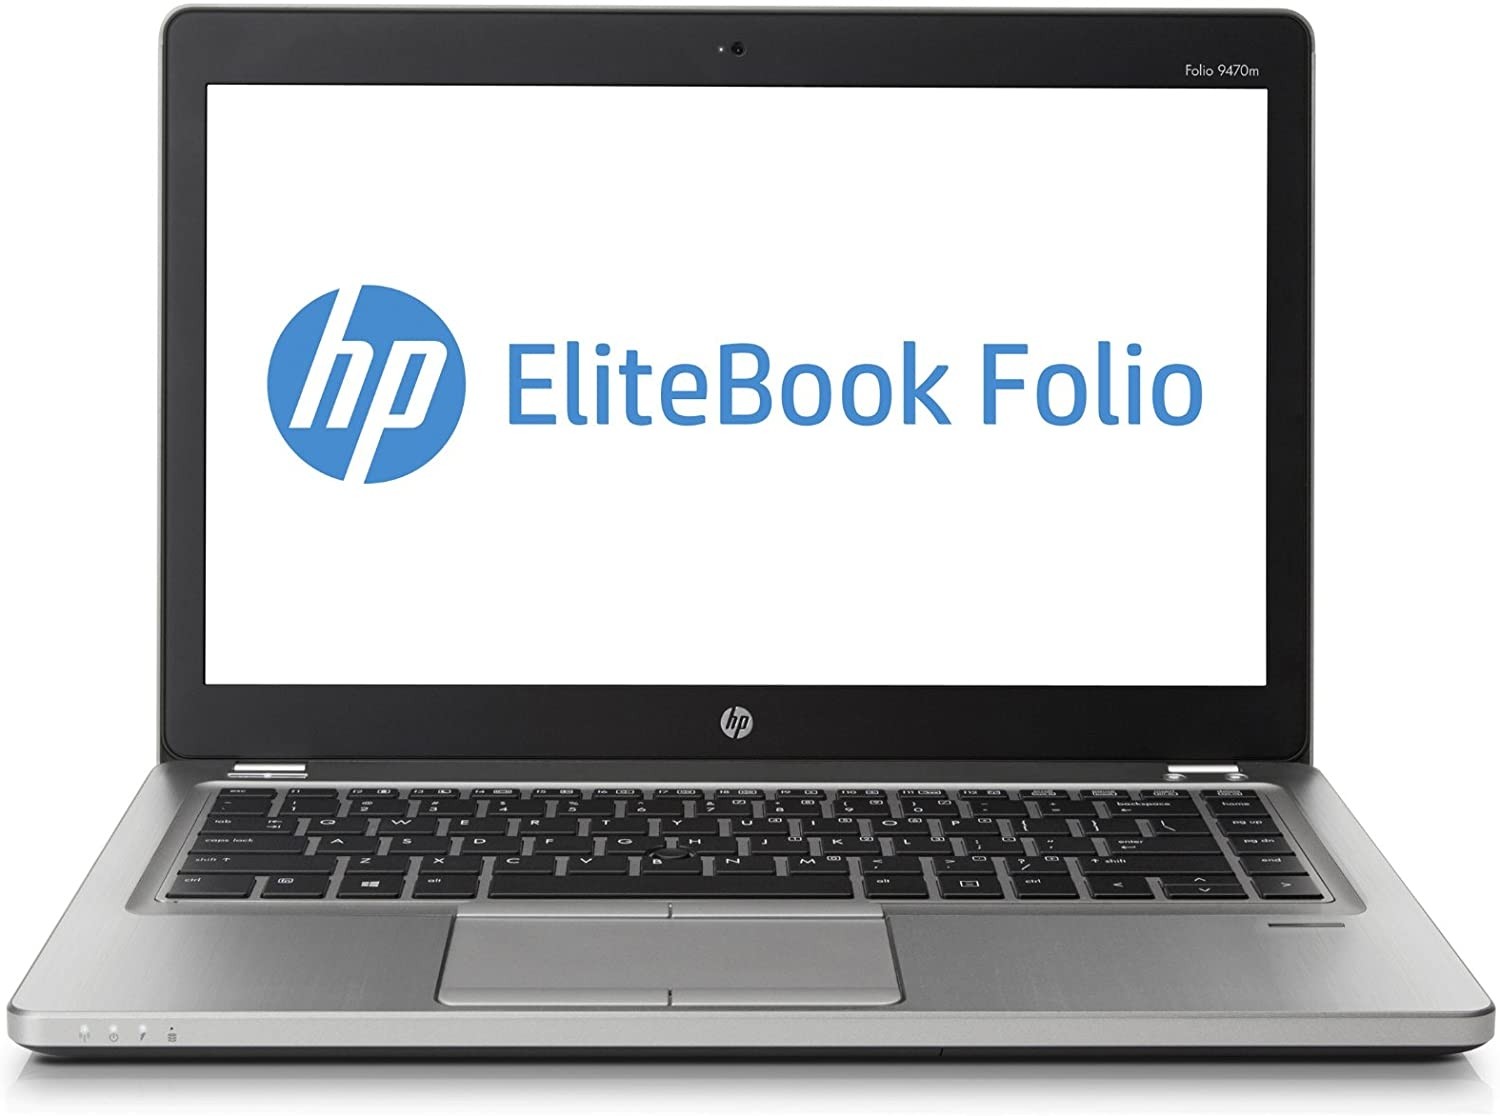 HP Folio 9470m 14" Laptop